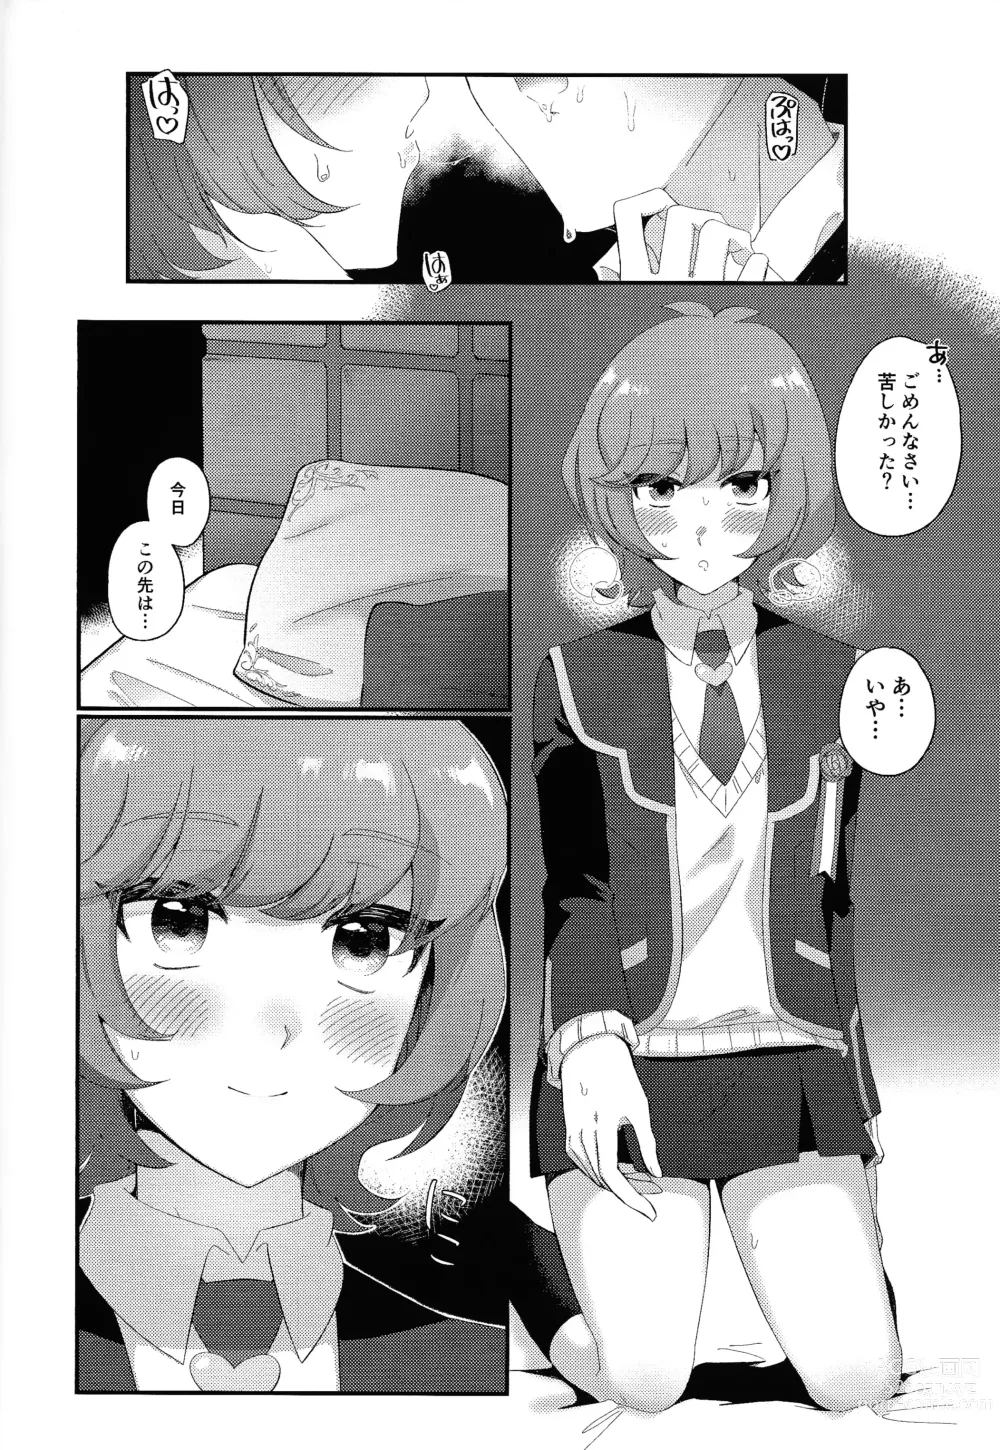 Page 9 of doujinshi Sotsugyo shite kara no o tanoshimi